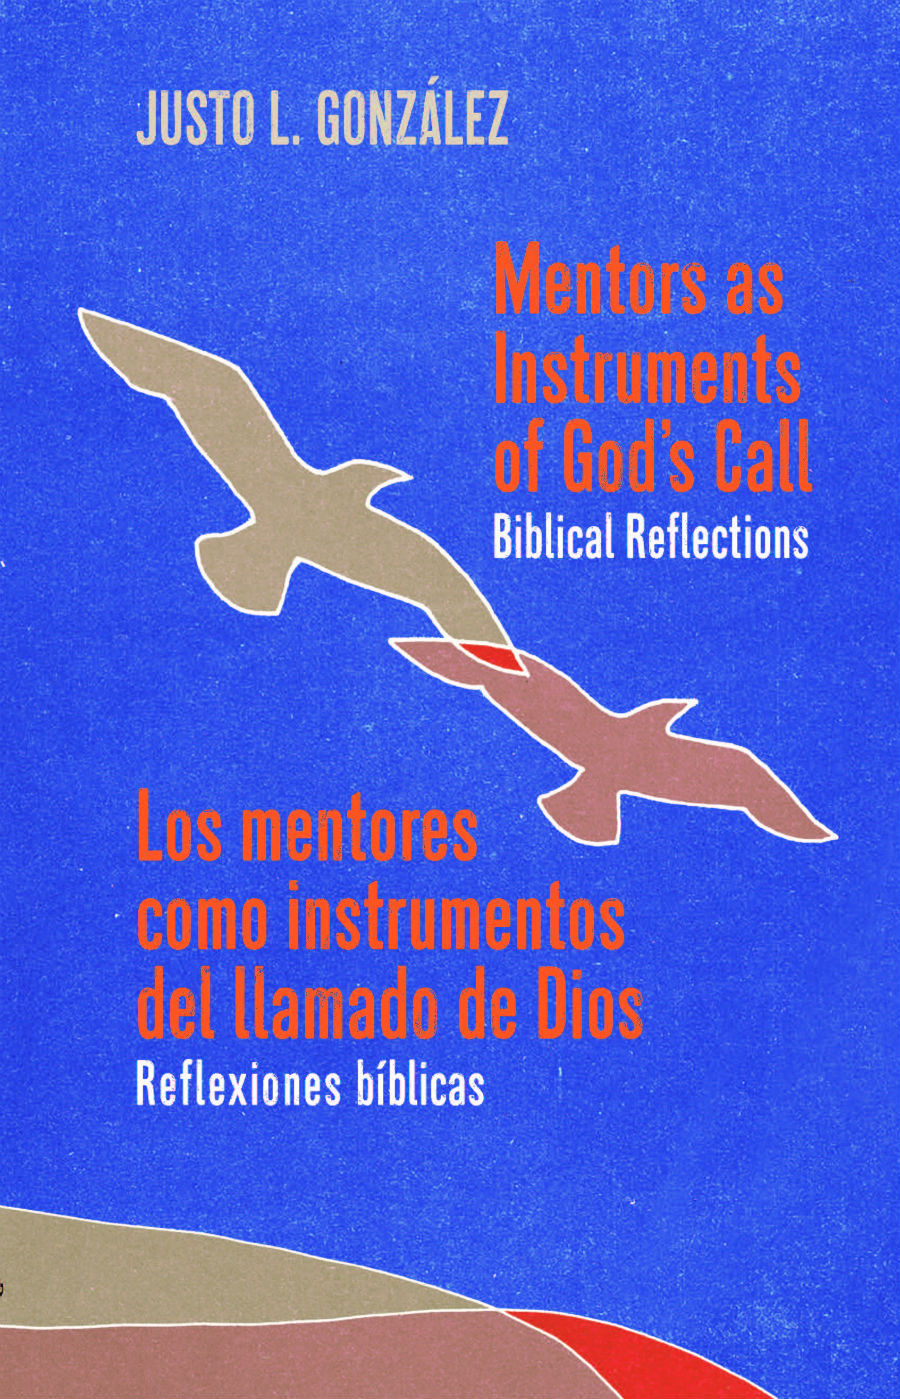 Los Mentores como Instrumentos del Llamado de Dios: Reflexiones Bíblicas / Mentors as Instruments of God’s Call: Biblical Reflections Bilingual Edition